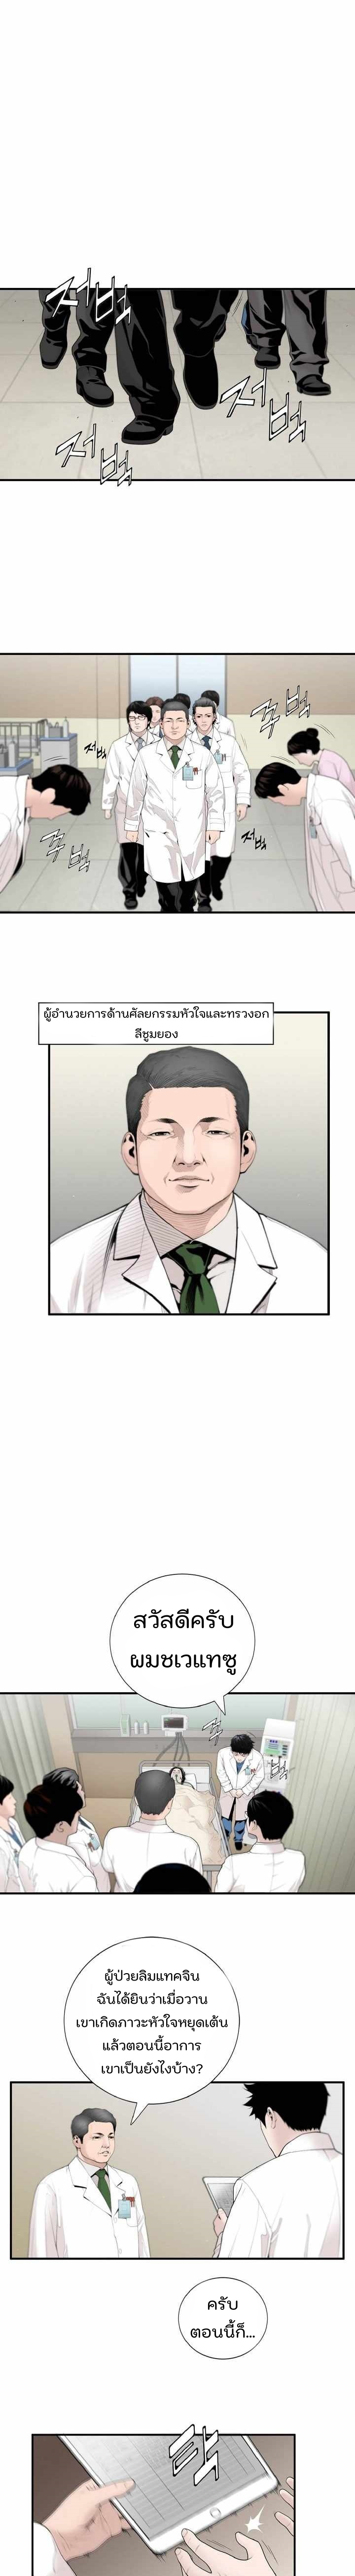 Dr. Choi Tae Soo6 (3)